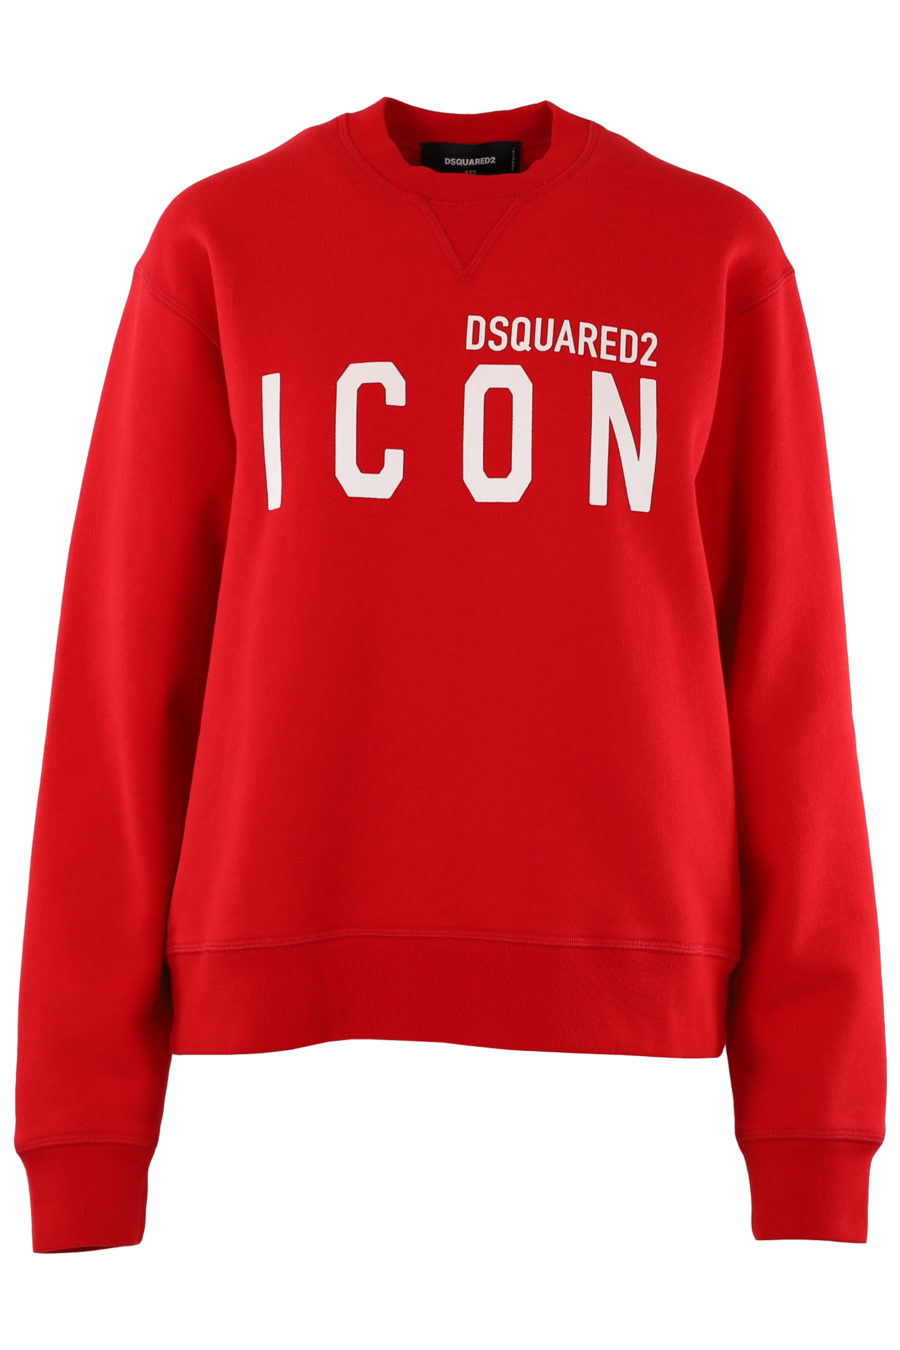 Rotes Sweatshirt mit weißem "Icon"-Logo - 3f7cef8f3380f2b29744d5cca9afb0b1dedb44cf